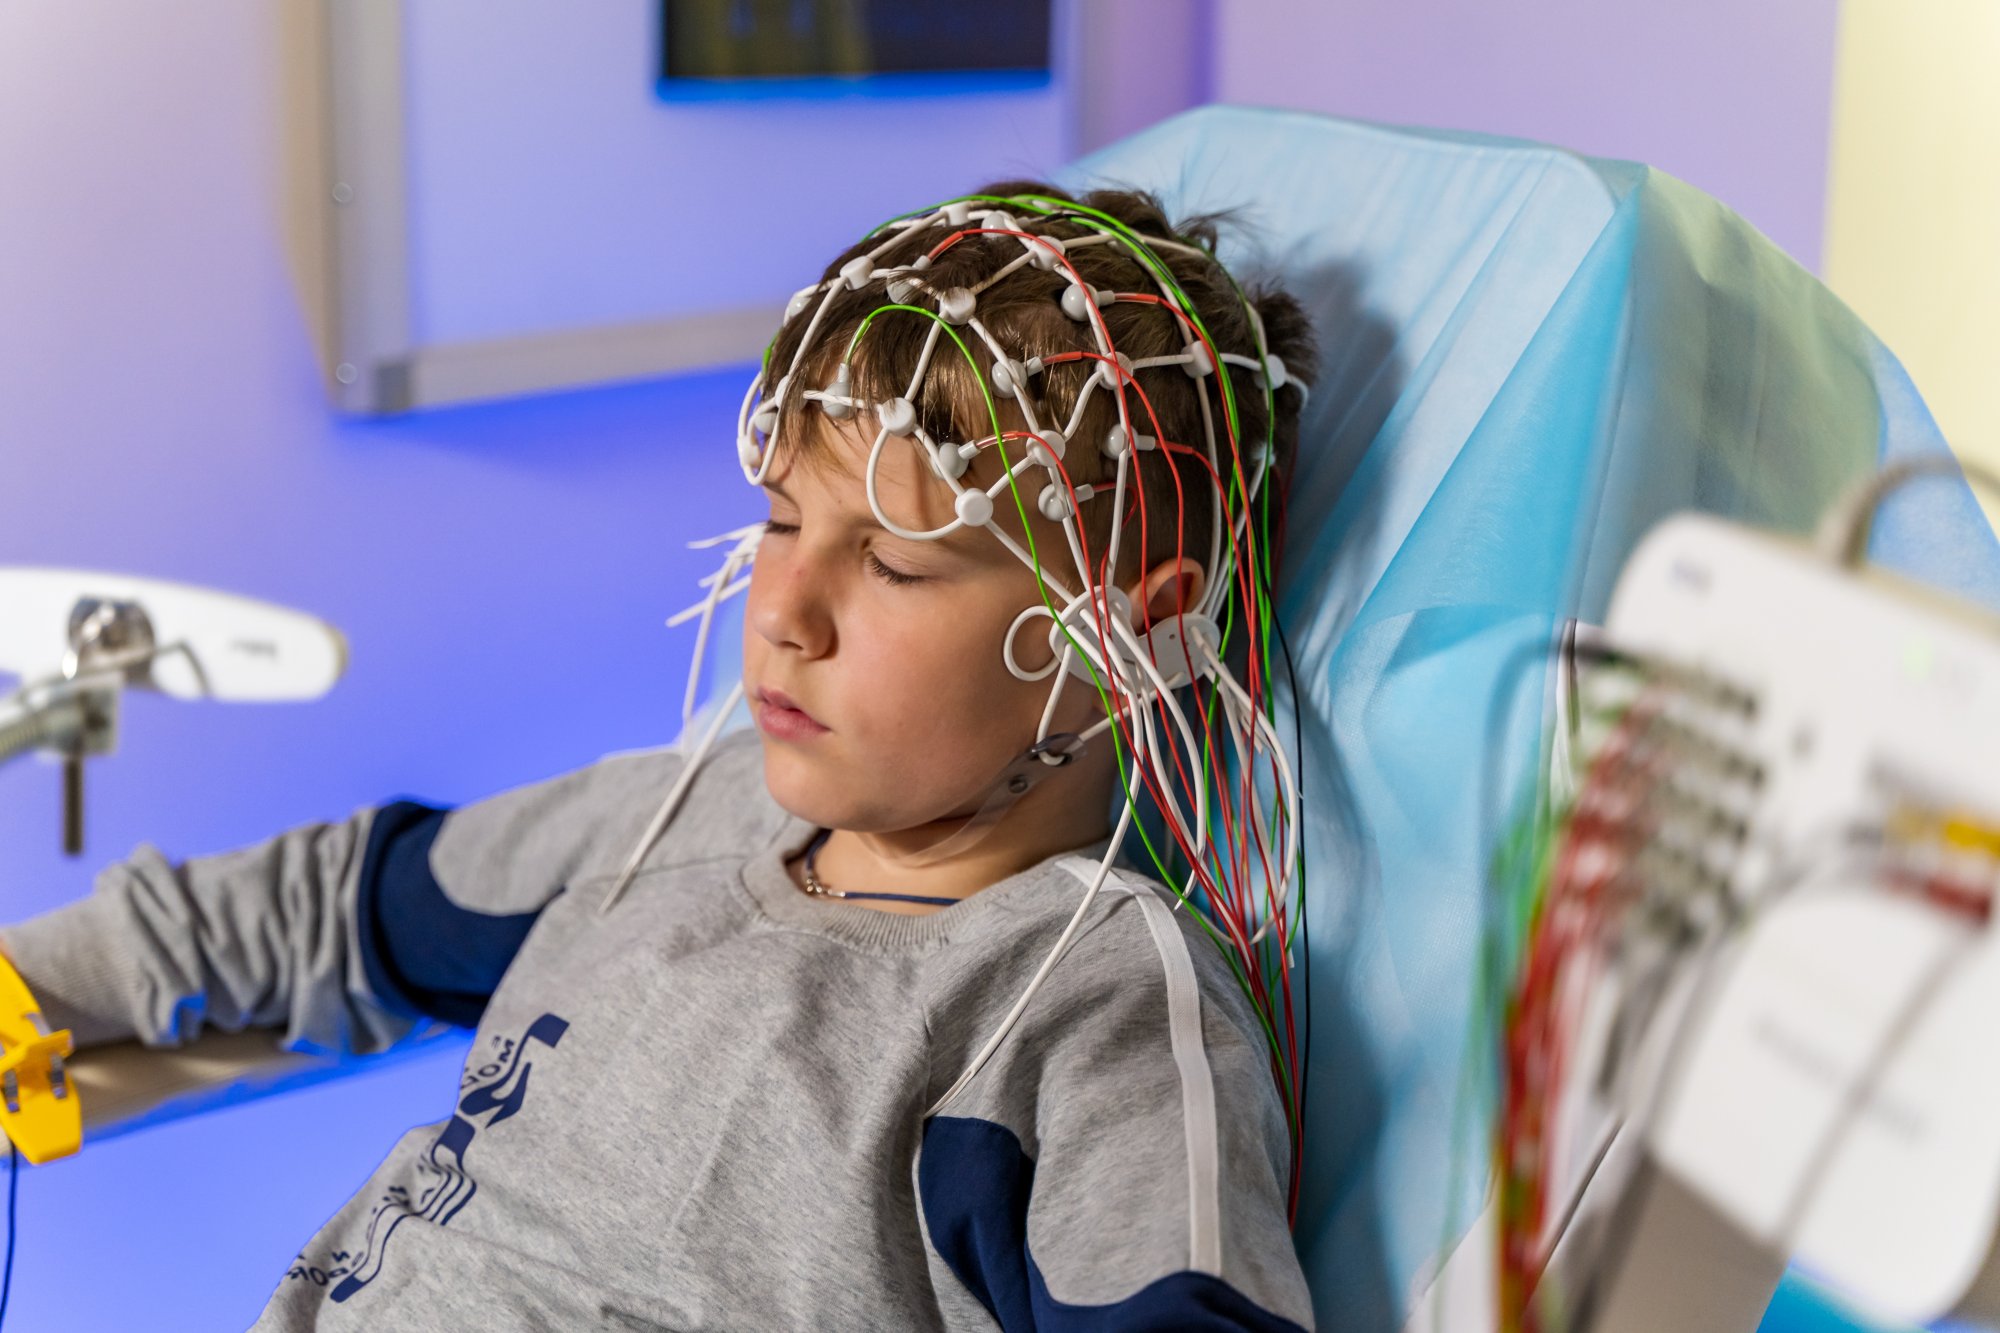 Đo điện não đồ - Phương pháp tầm soát bệnh sớm ở não